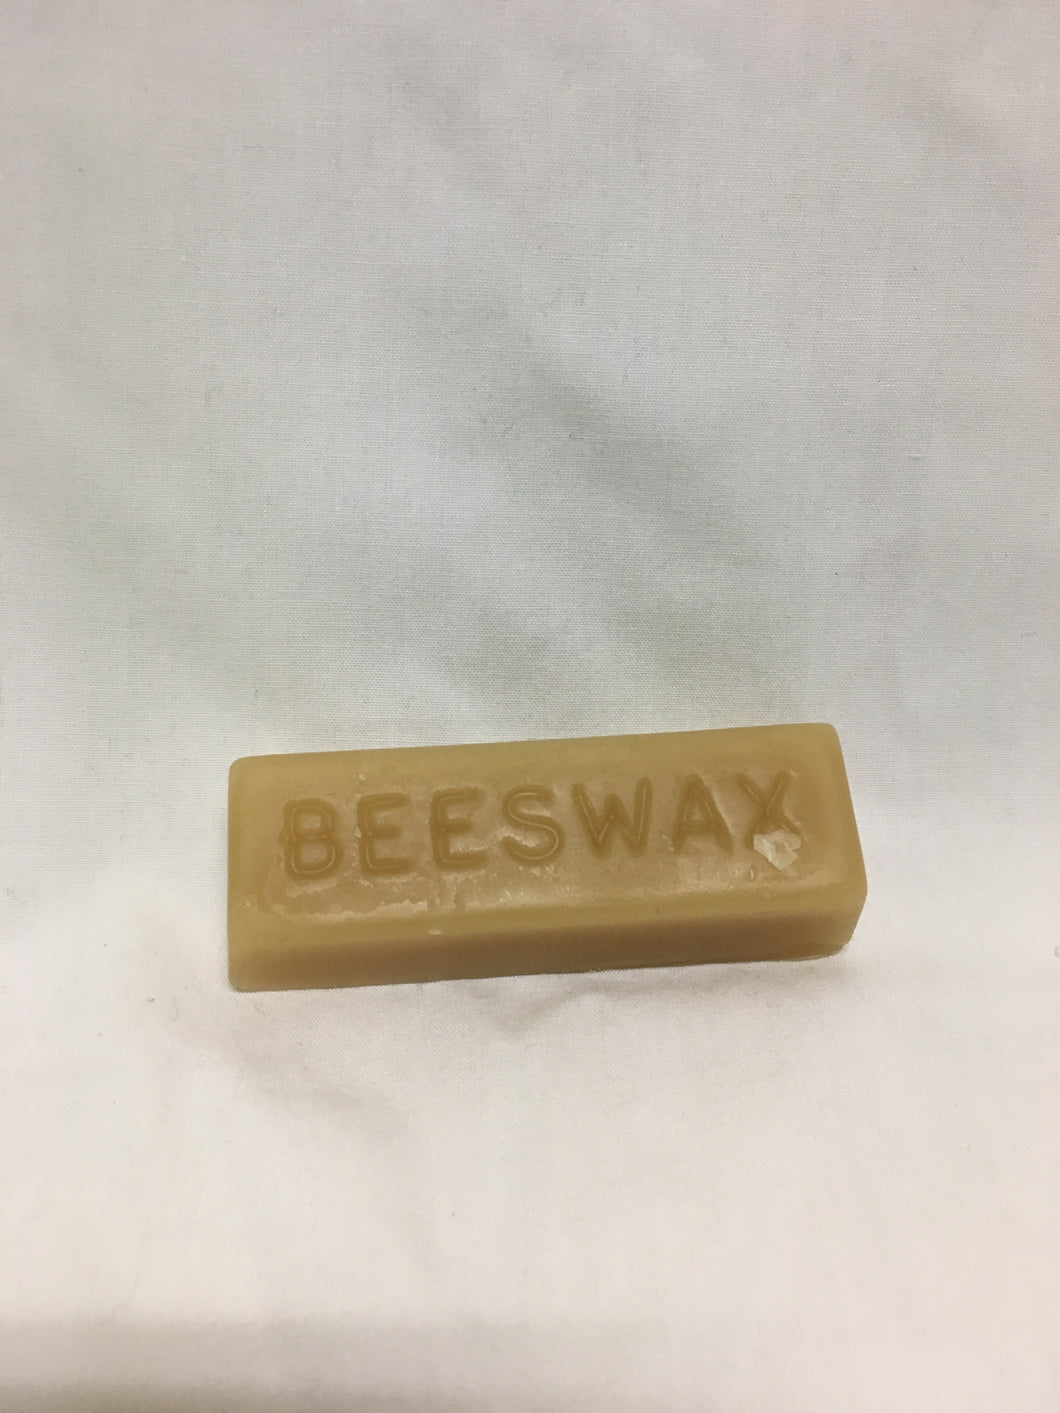 1 oz Natural Bees Wax